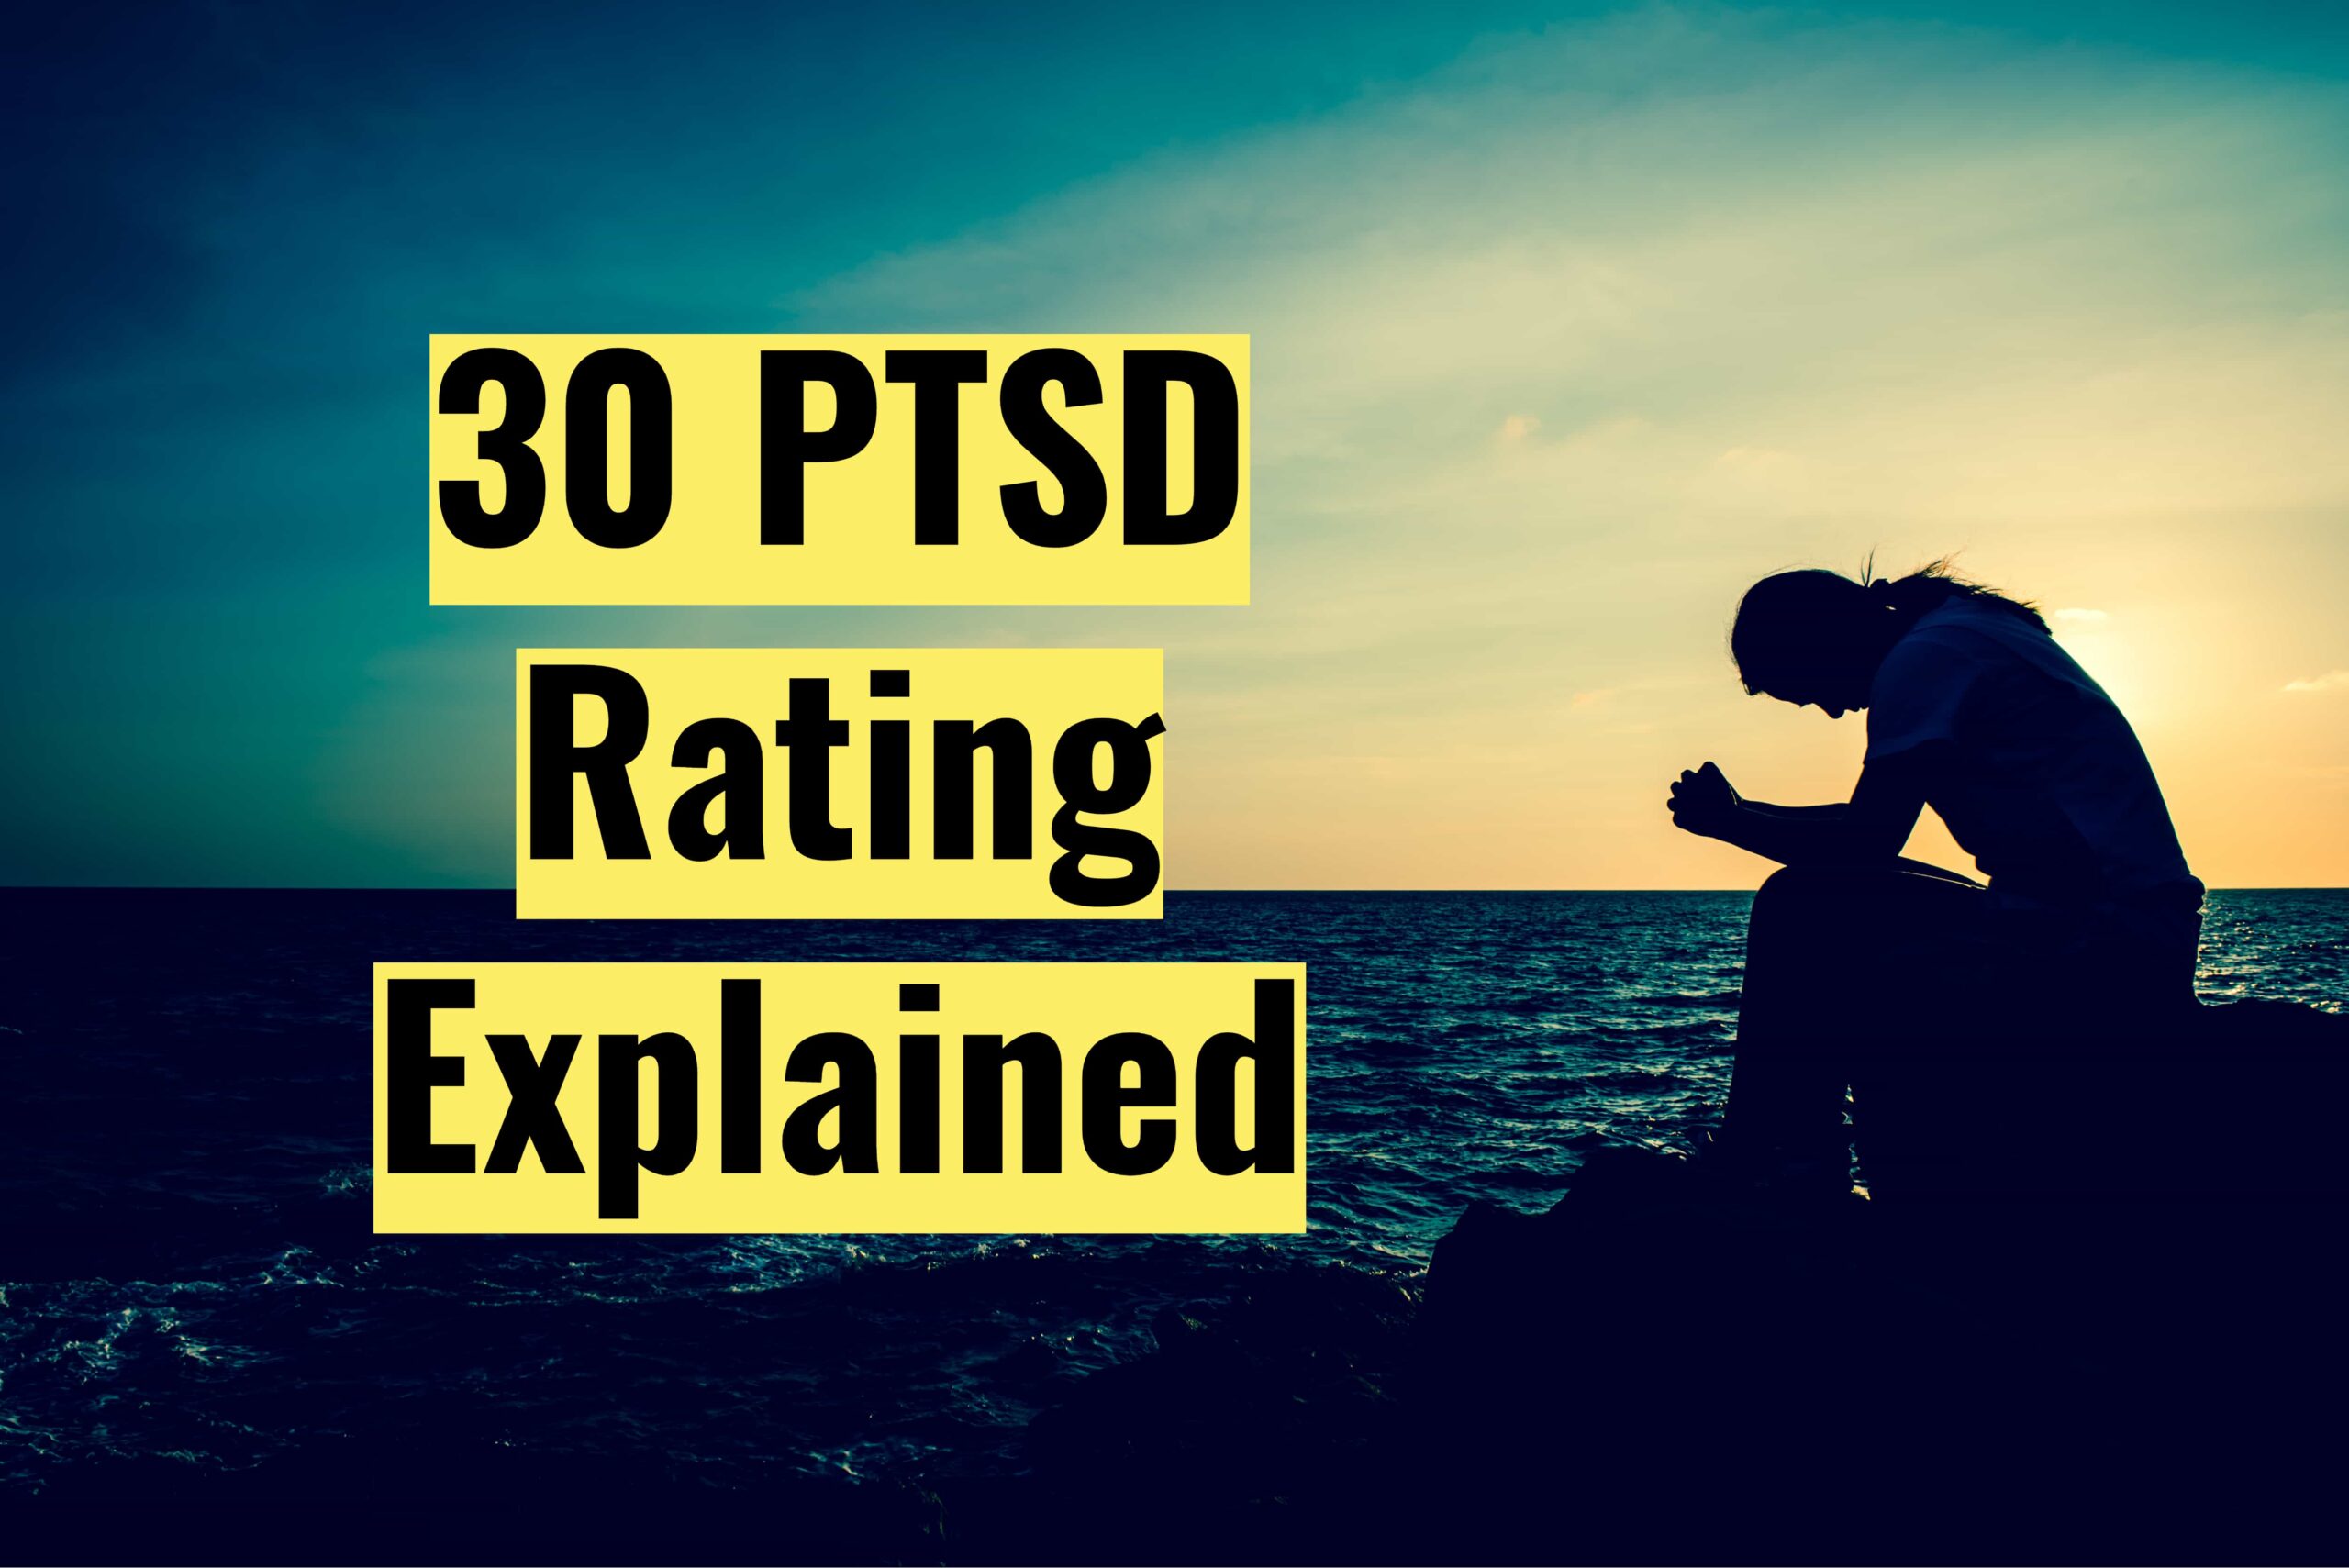 30 PTSD Rating Explained 30 PTSD Rating